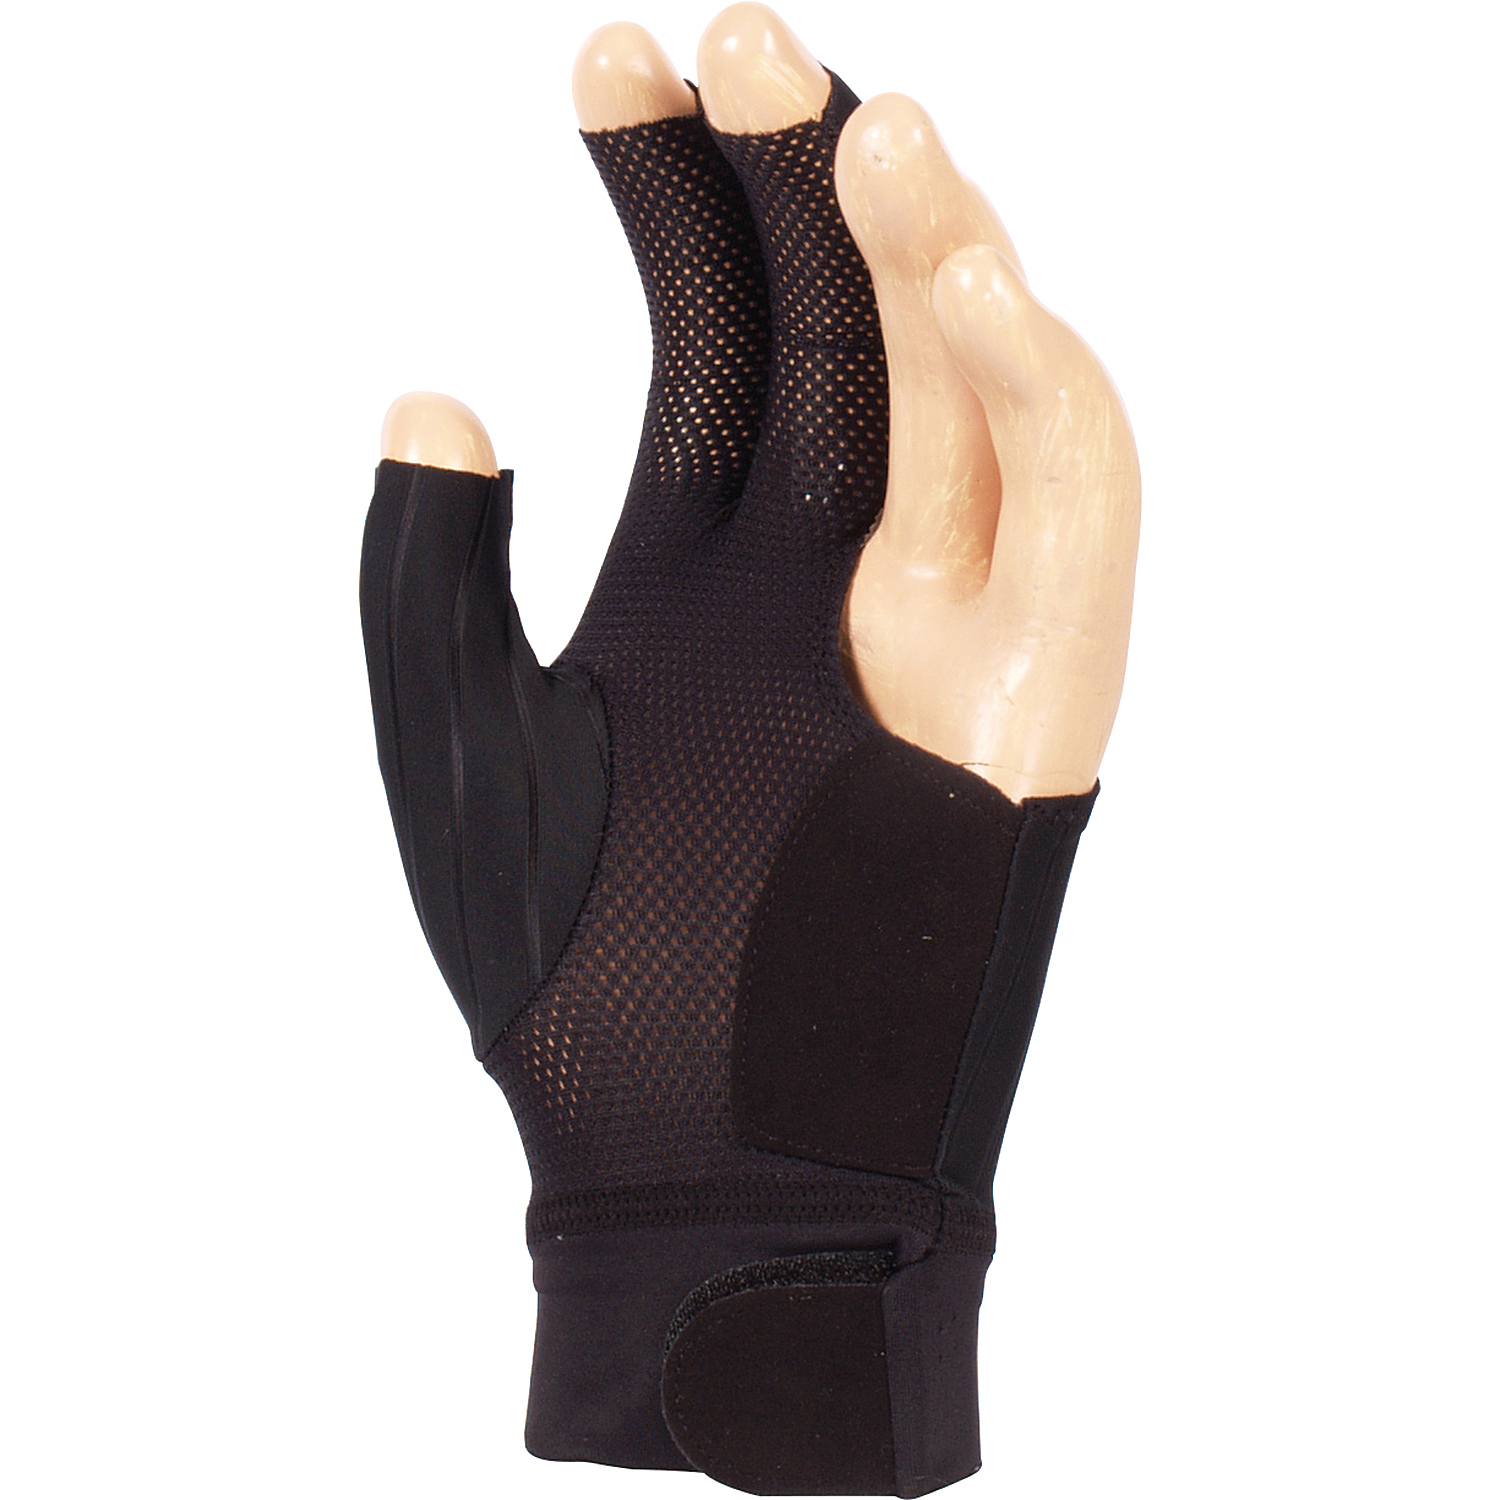 KA0280-AD: Biljart handschoen Adam Pro zwart